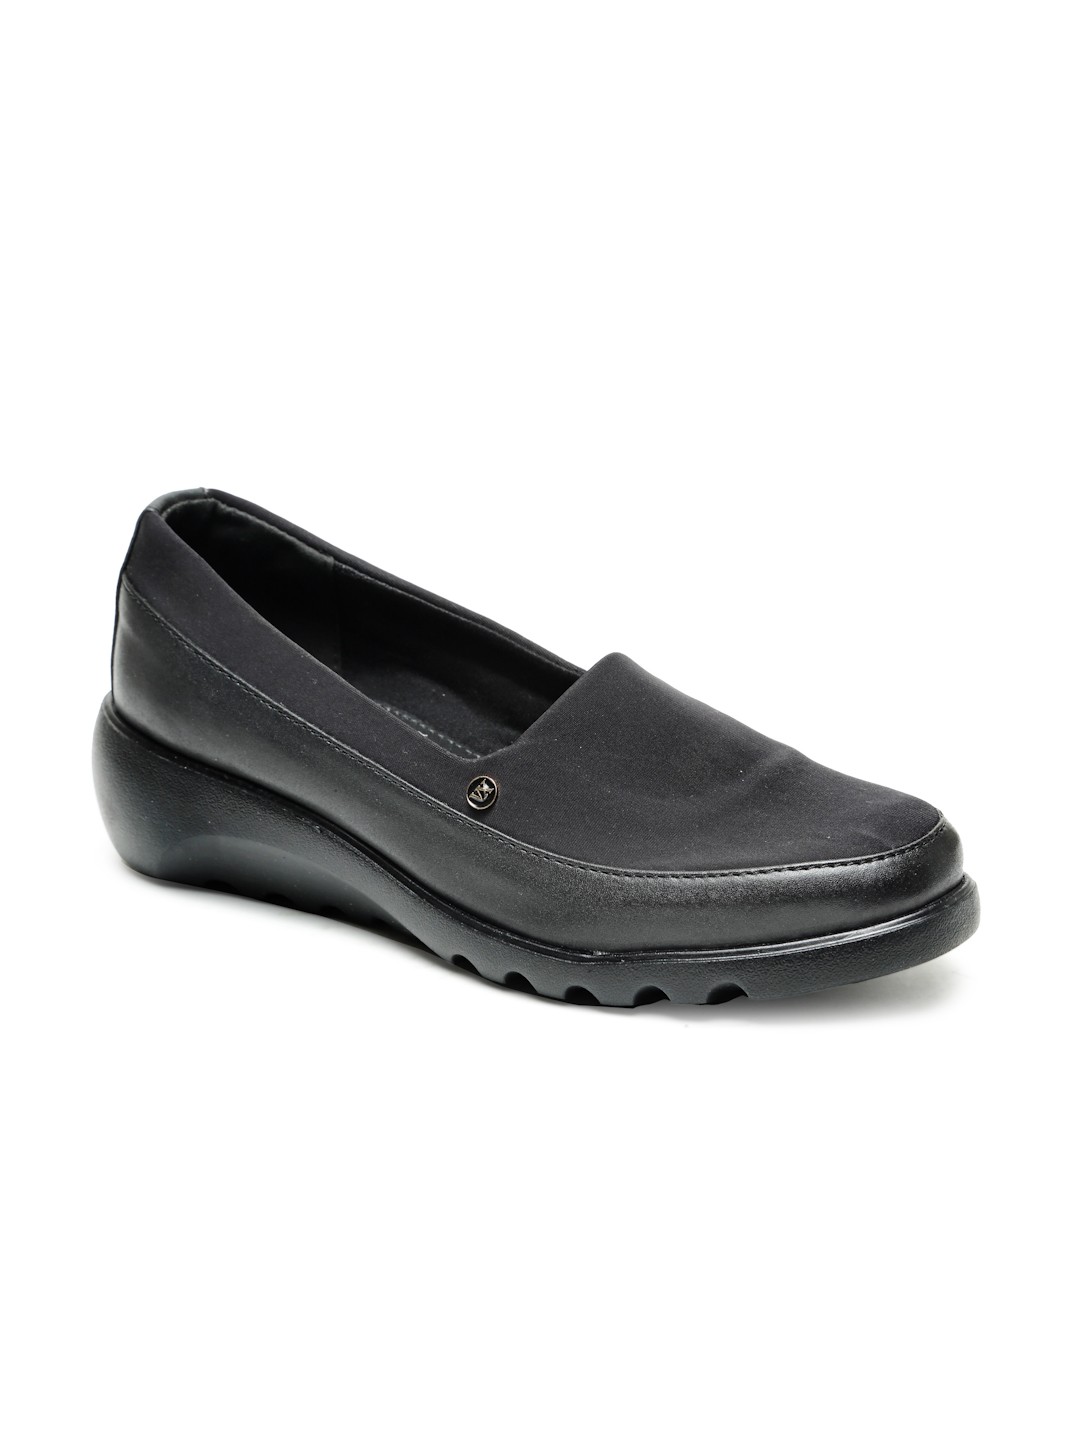 Buy Von Wellx Germany Comfort Women's Black Casual Shoes Elsa Online in Chandigarh